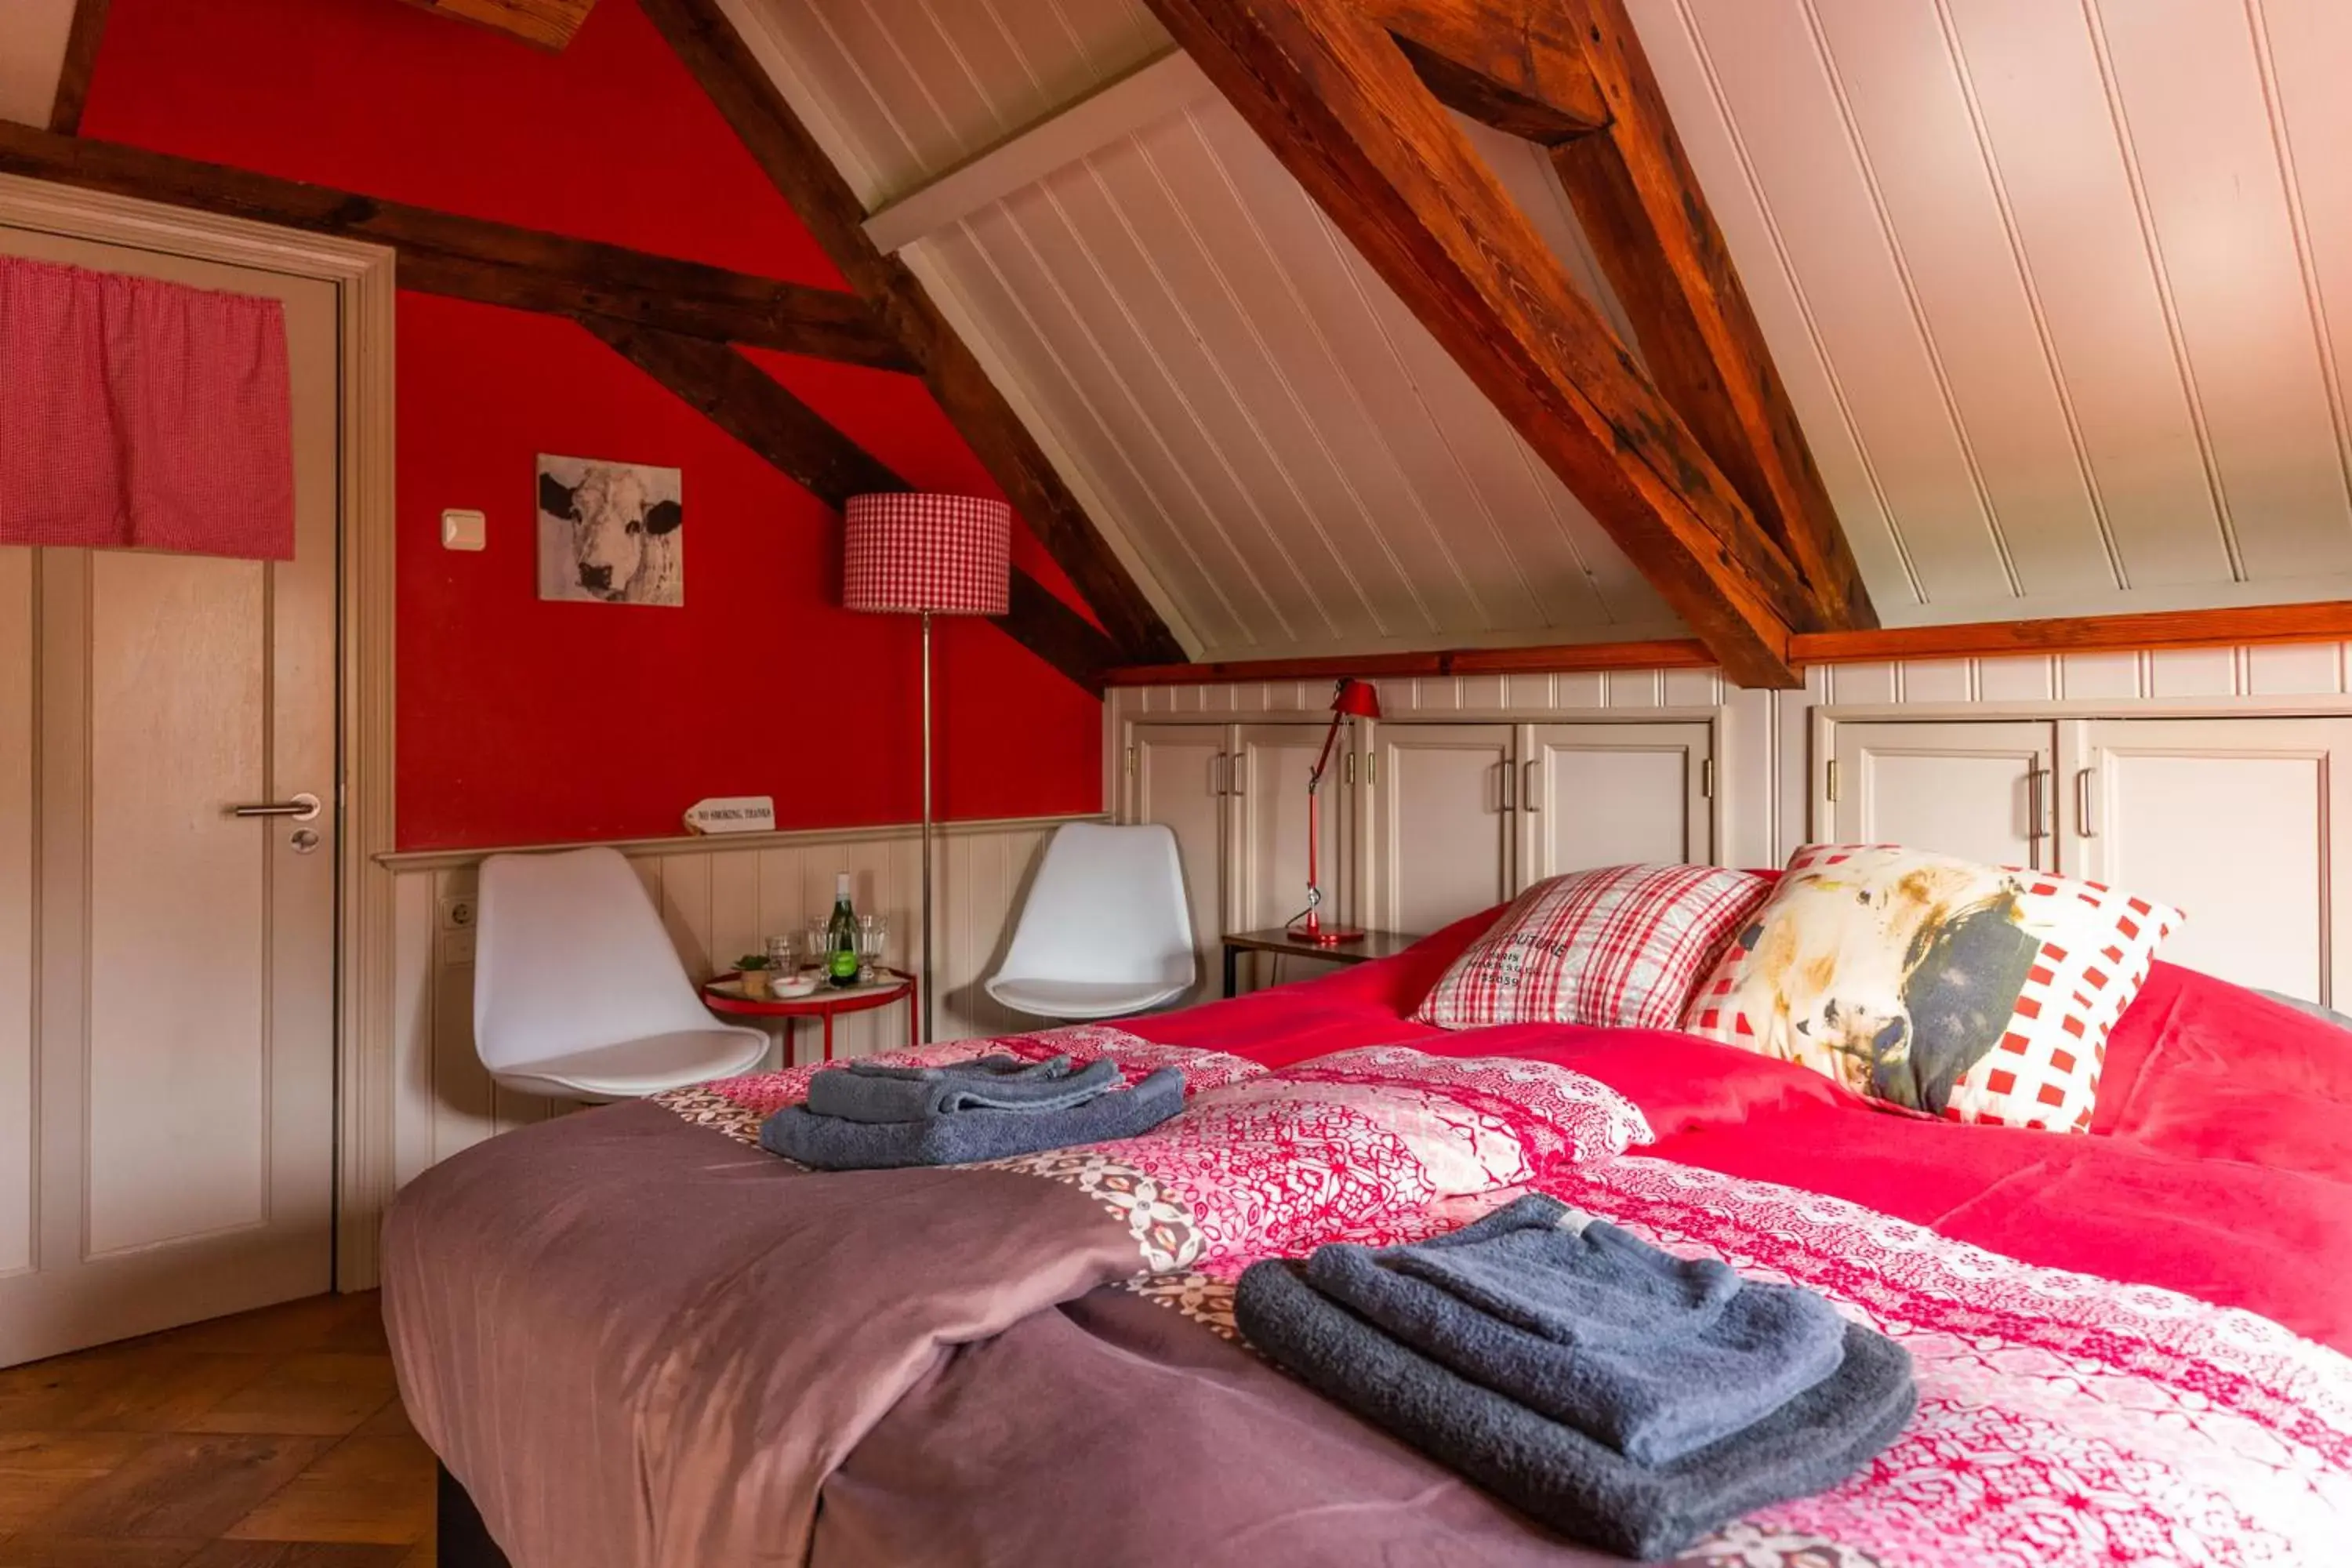 Bedroom, Bed in Boerenhofstede de Overhorn